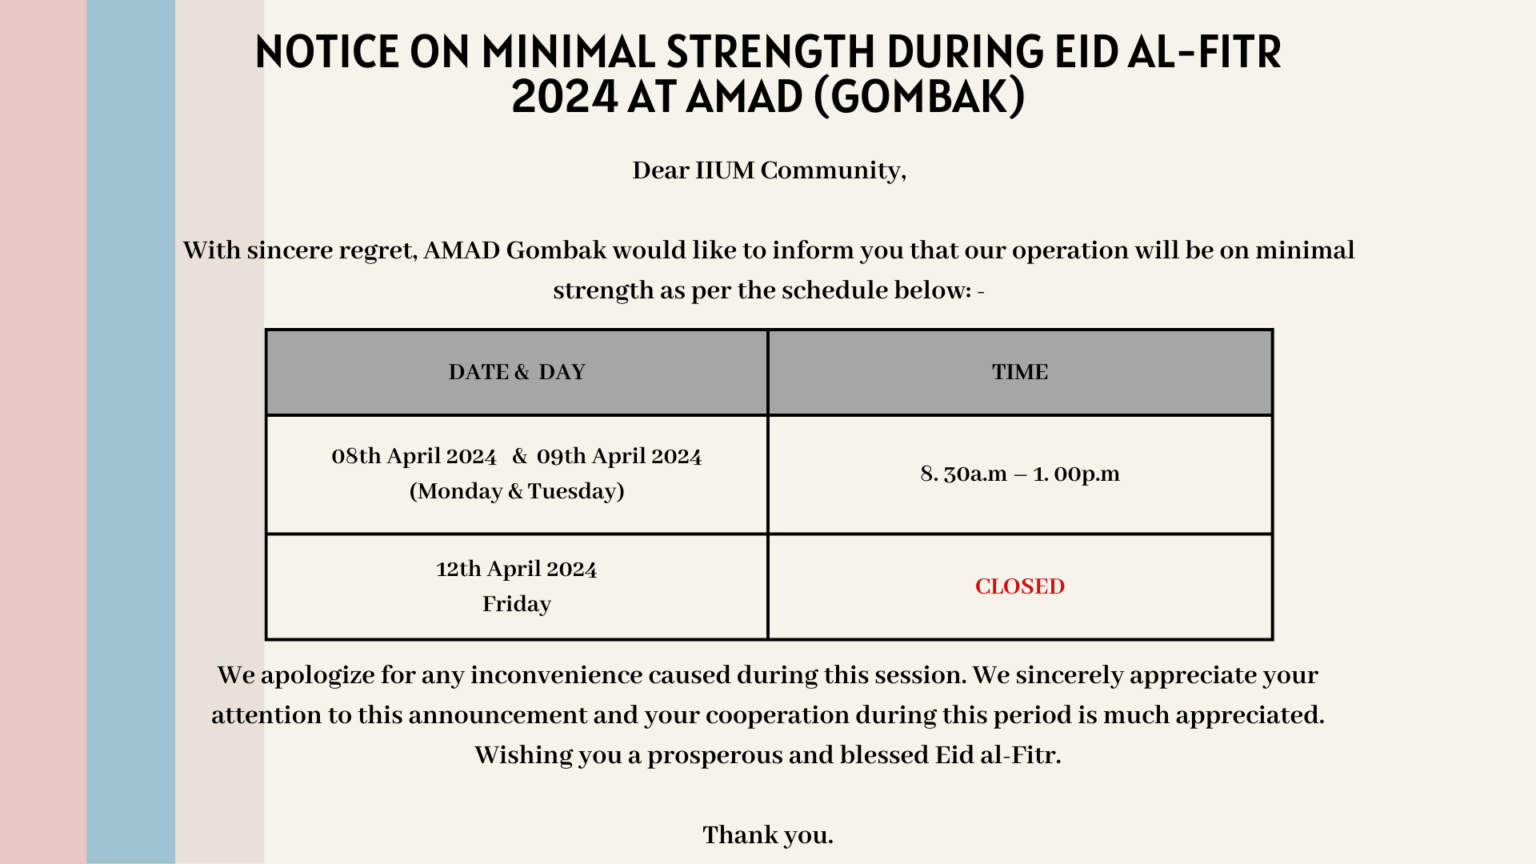 NOTICE ON MINIMAL STRENGTH DURING EID AL-FITR 2024 AT AMAD (GOMBAK)